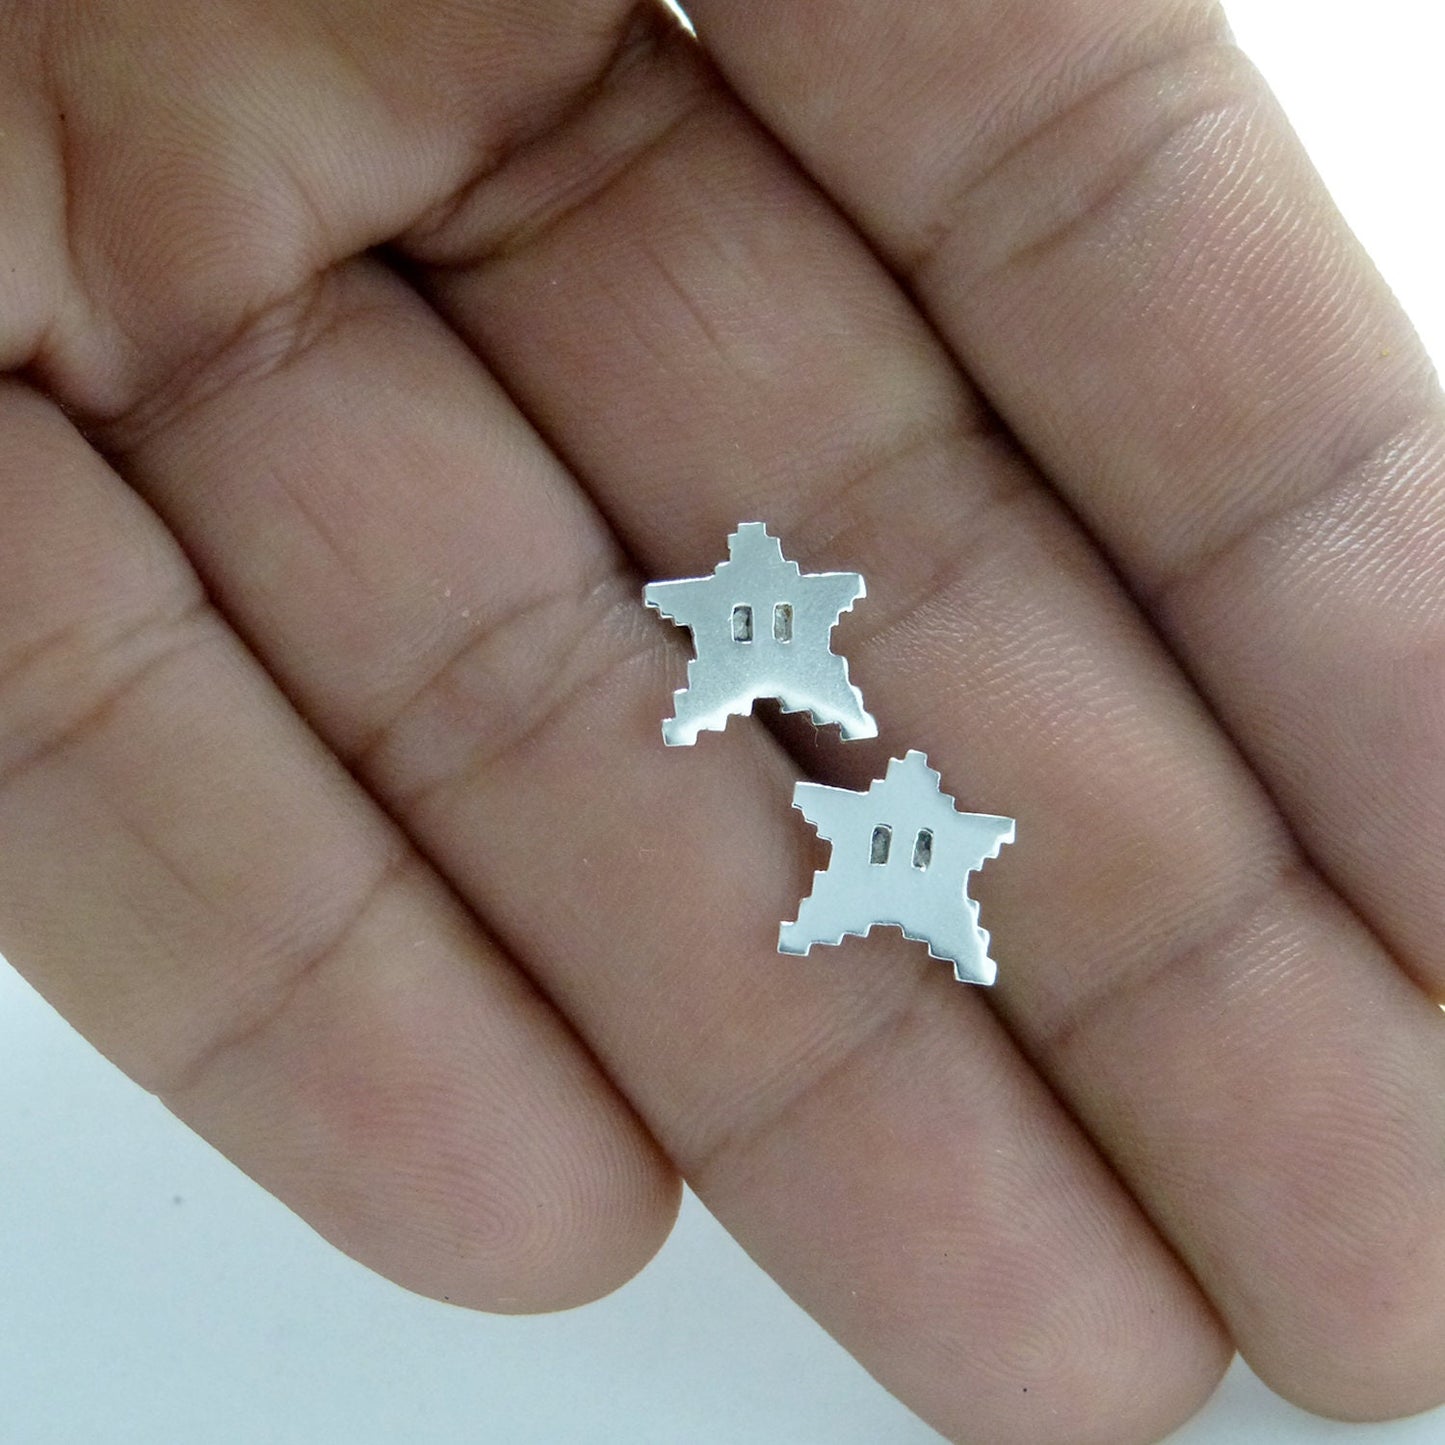 8-bit Stars earrings in 925 silver